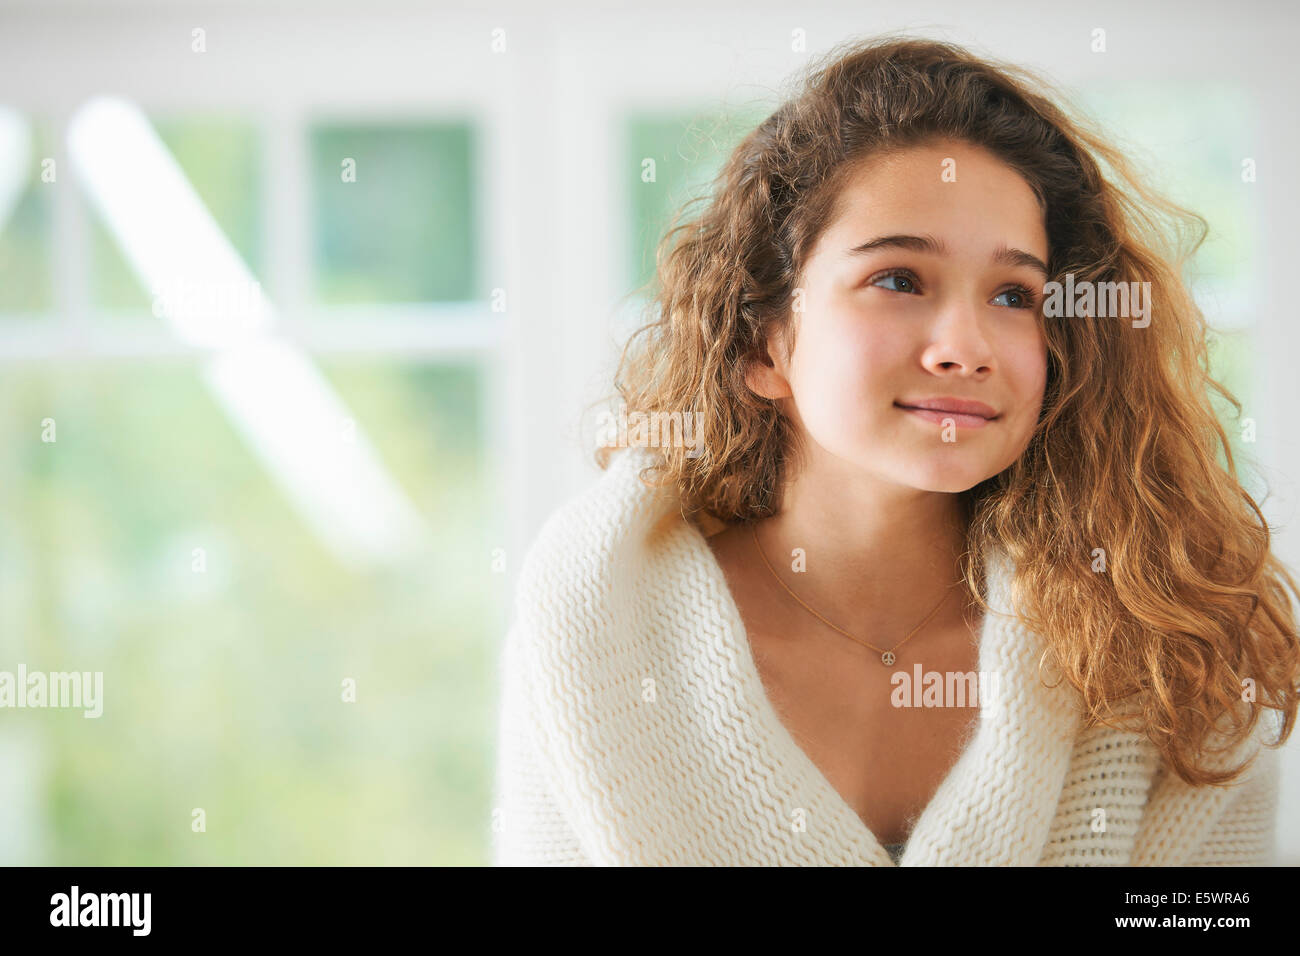 Ragazza giovane con capelli castani ,sorridente, ritratto Foto Stock